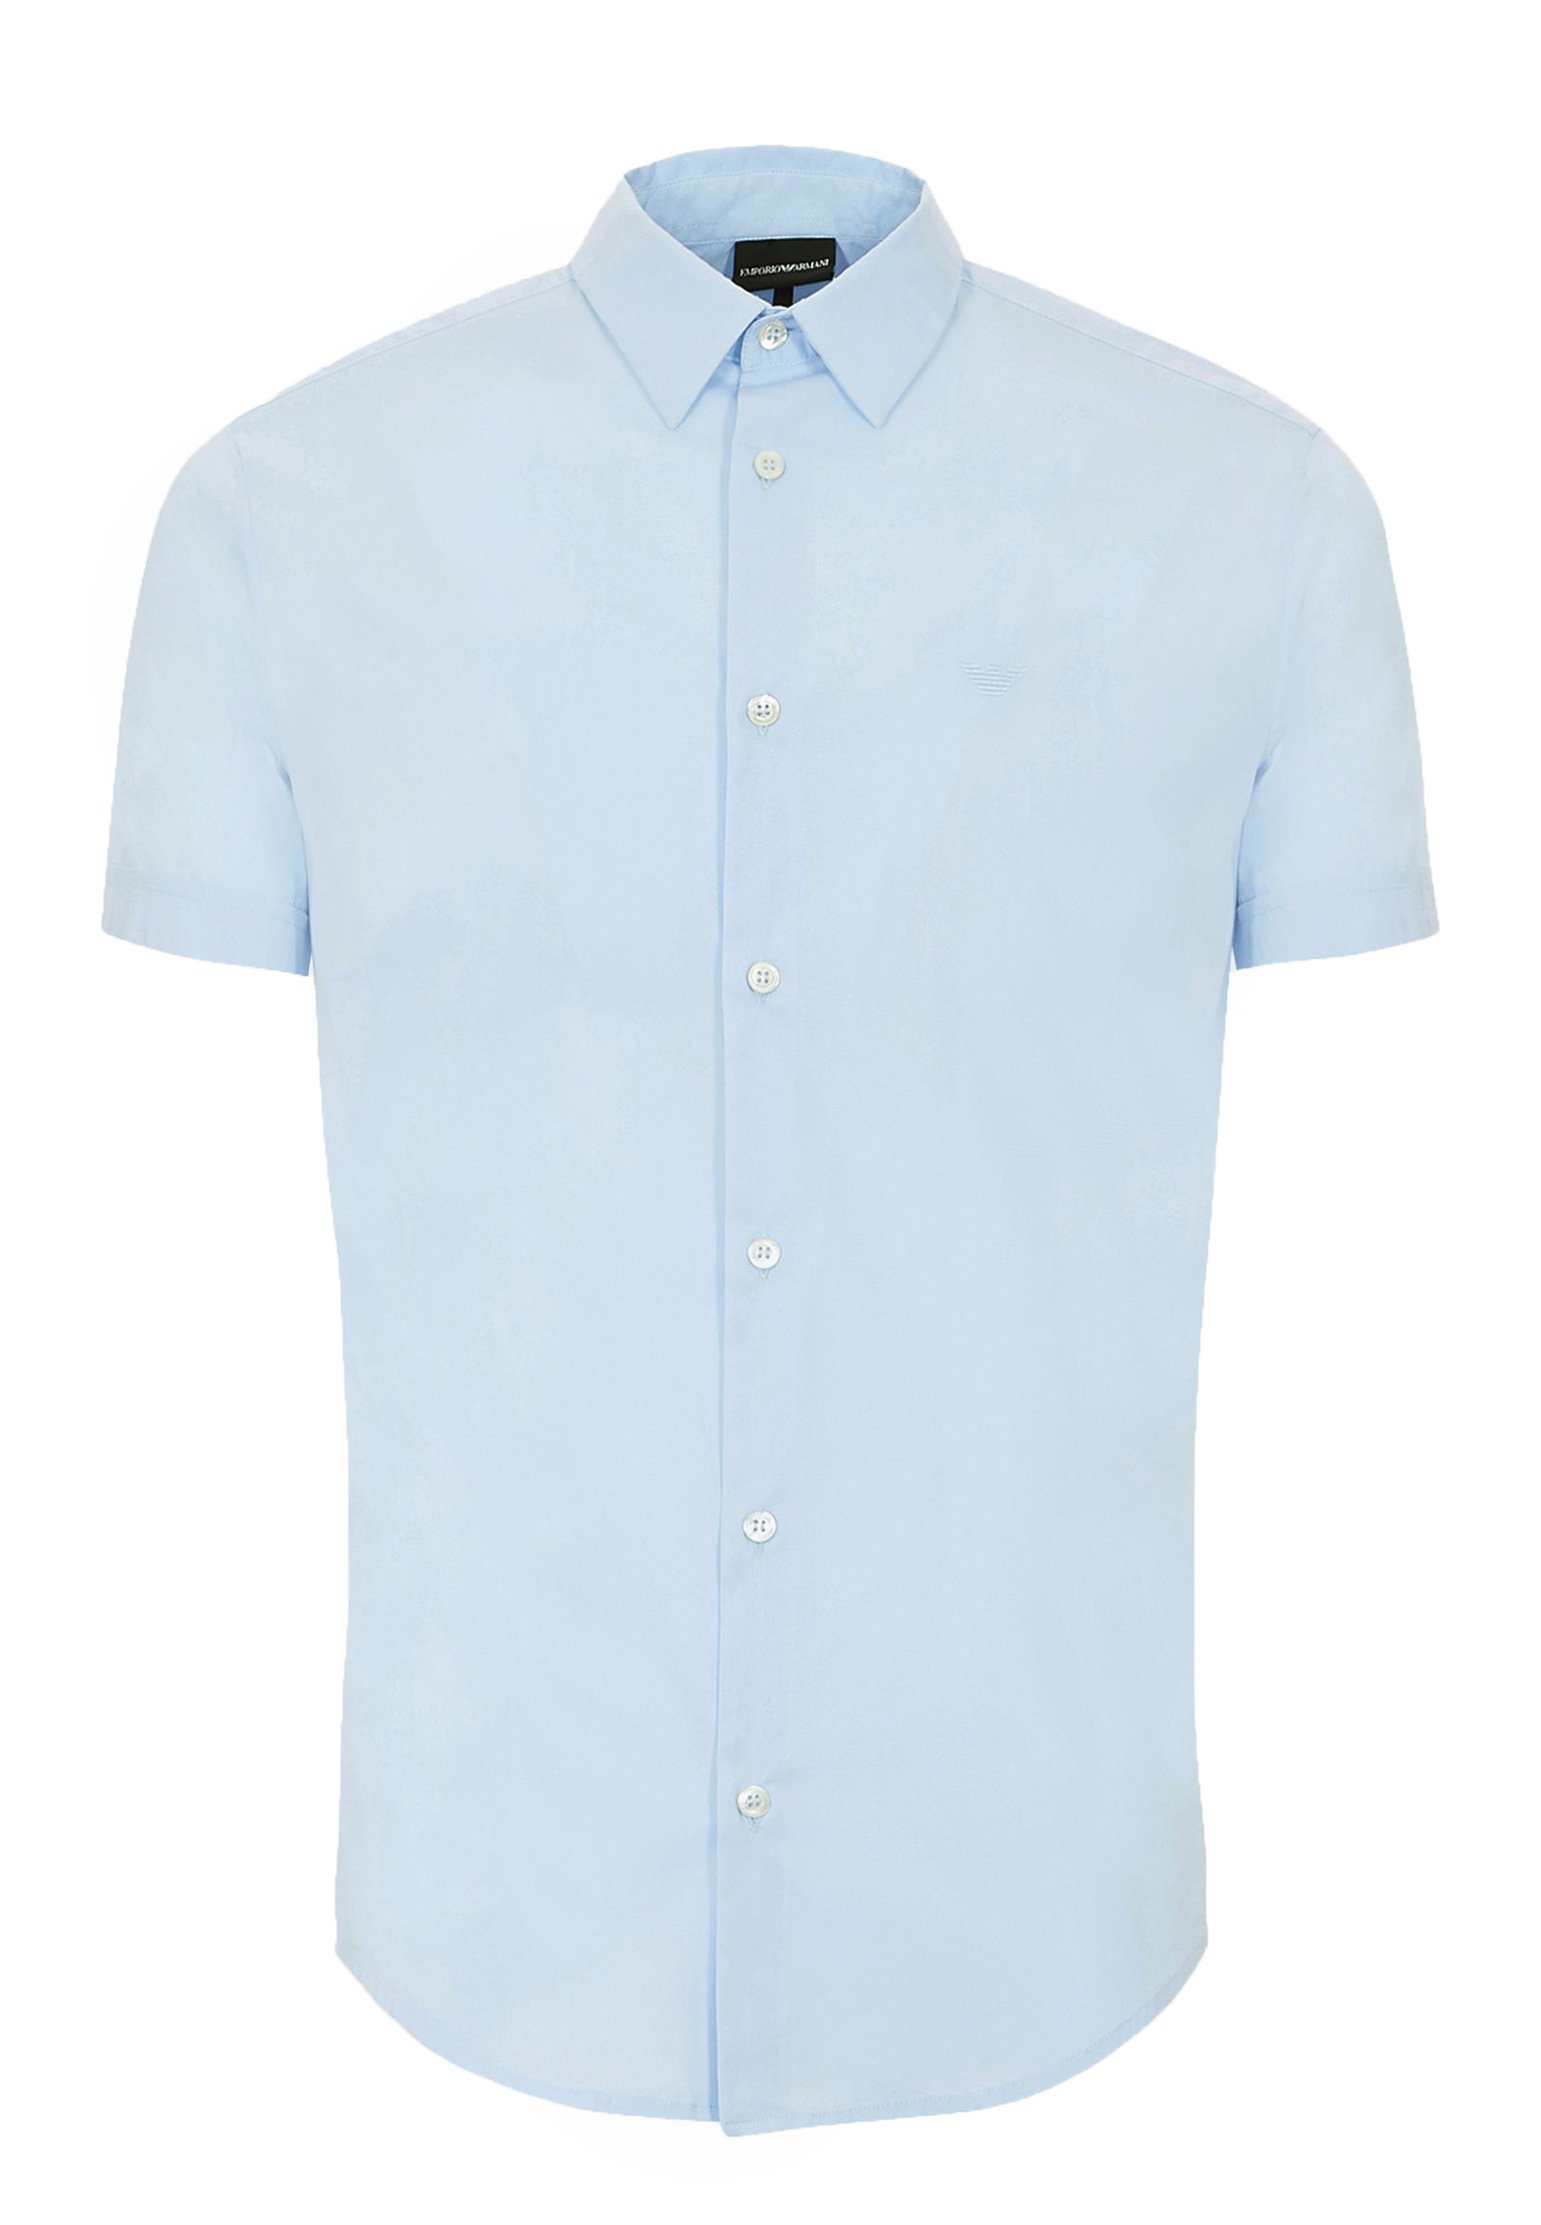 Рубашка мужская Emporio Armani 126902 голубая 3XL